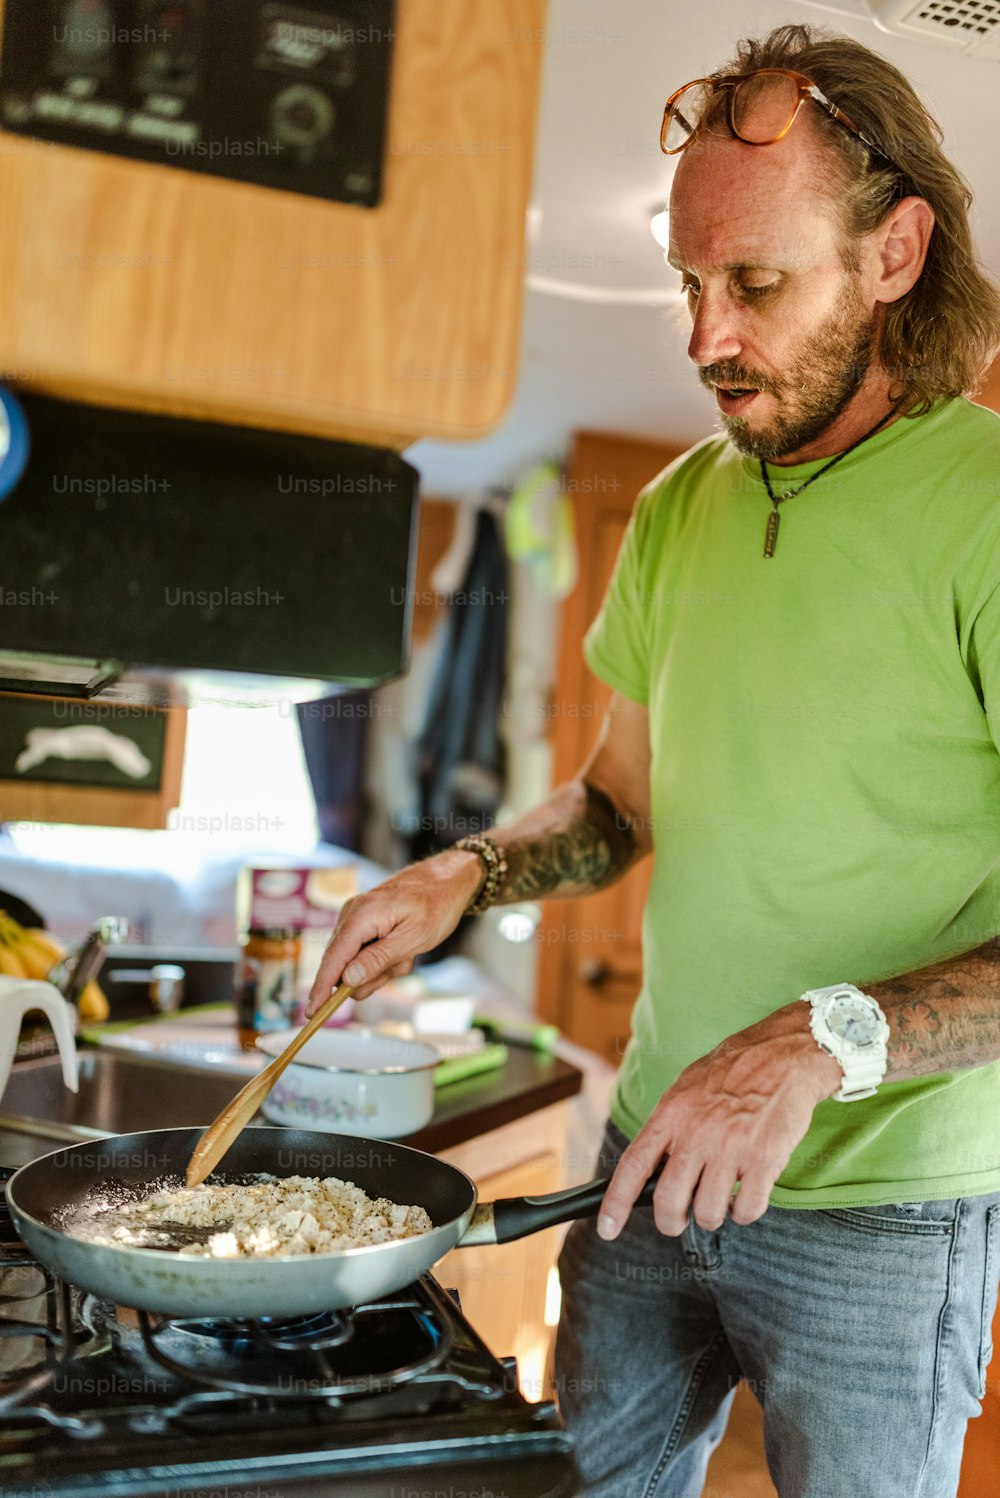 초록색 셔츠를 입은 남자가 난로에서 음식을 요리하고 있다